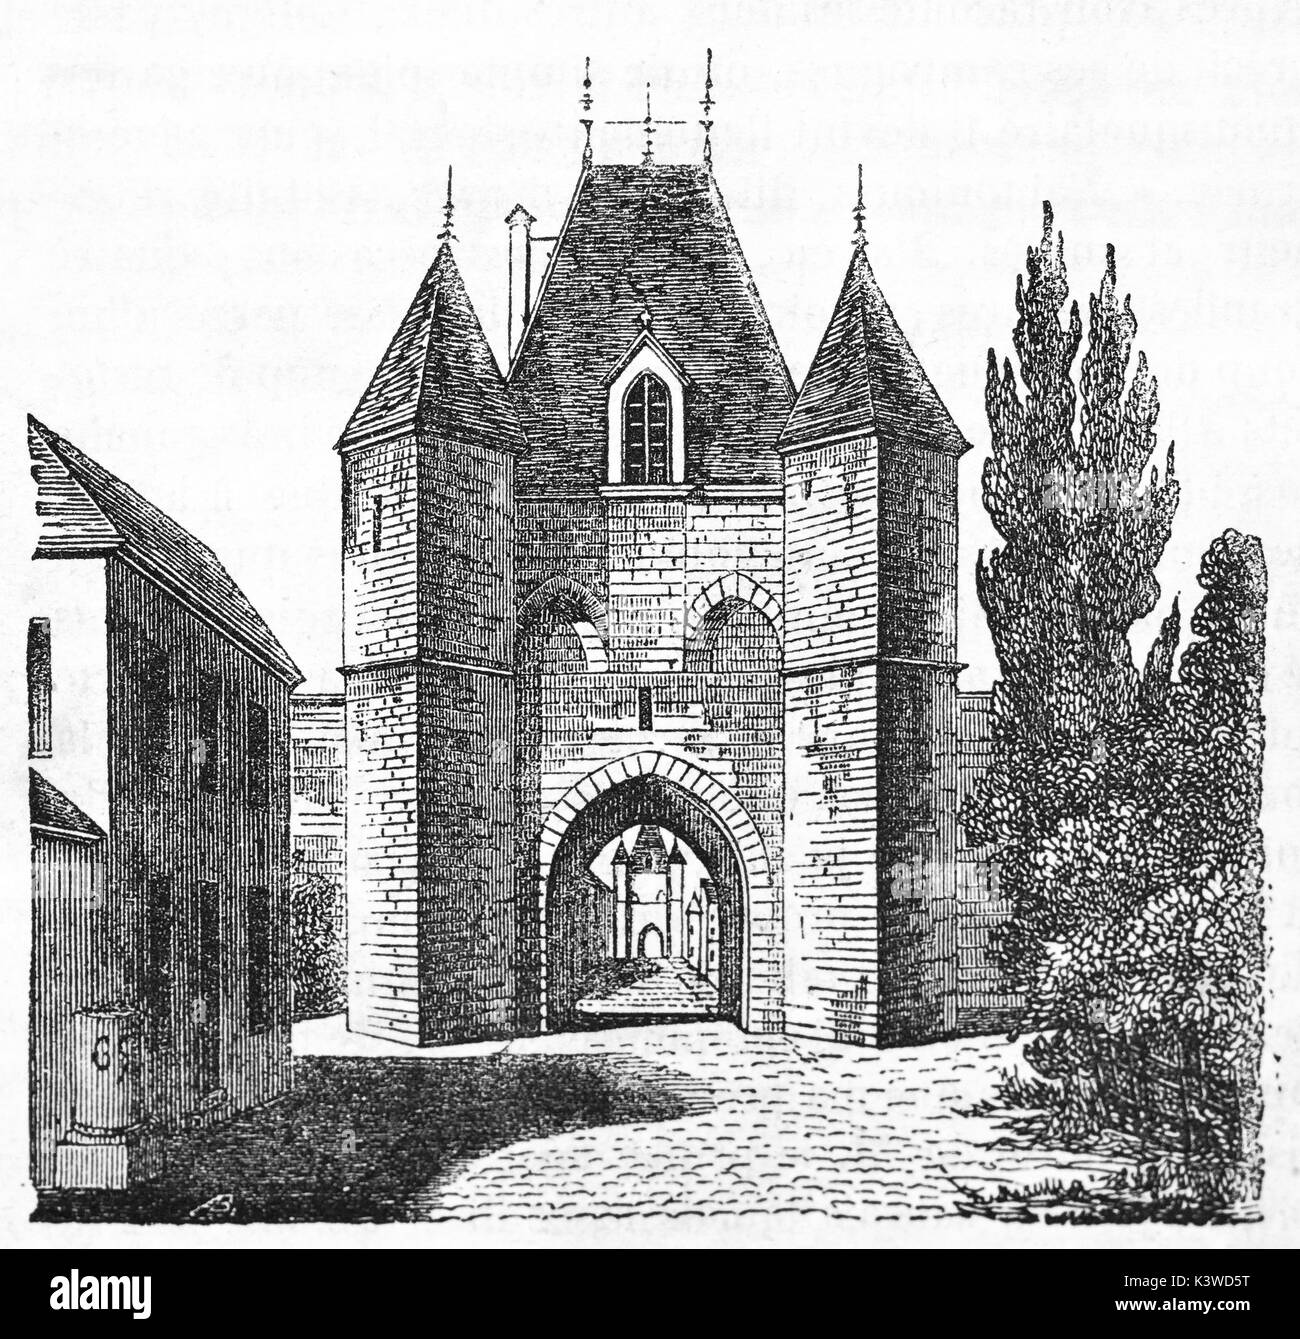 Vecchia illustrazione di Villeneuve-le-Roi gate, nella periferia sud di Parigi. Da autore non identificato, pubblicato il Magasin pittoresco, Parigi, 1841 Foto Stock